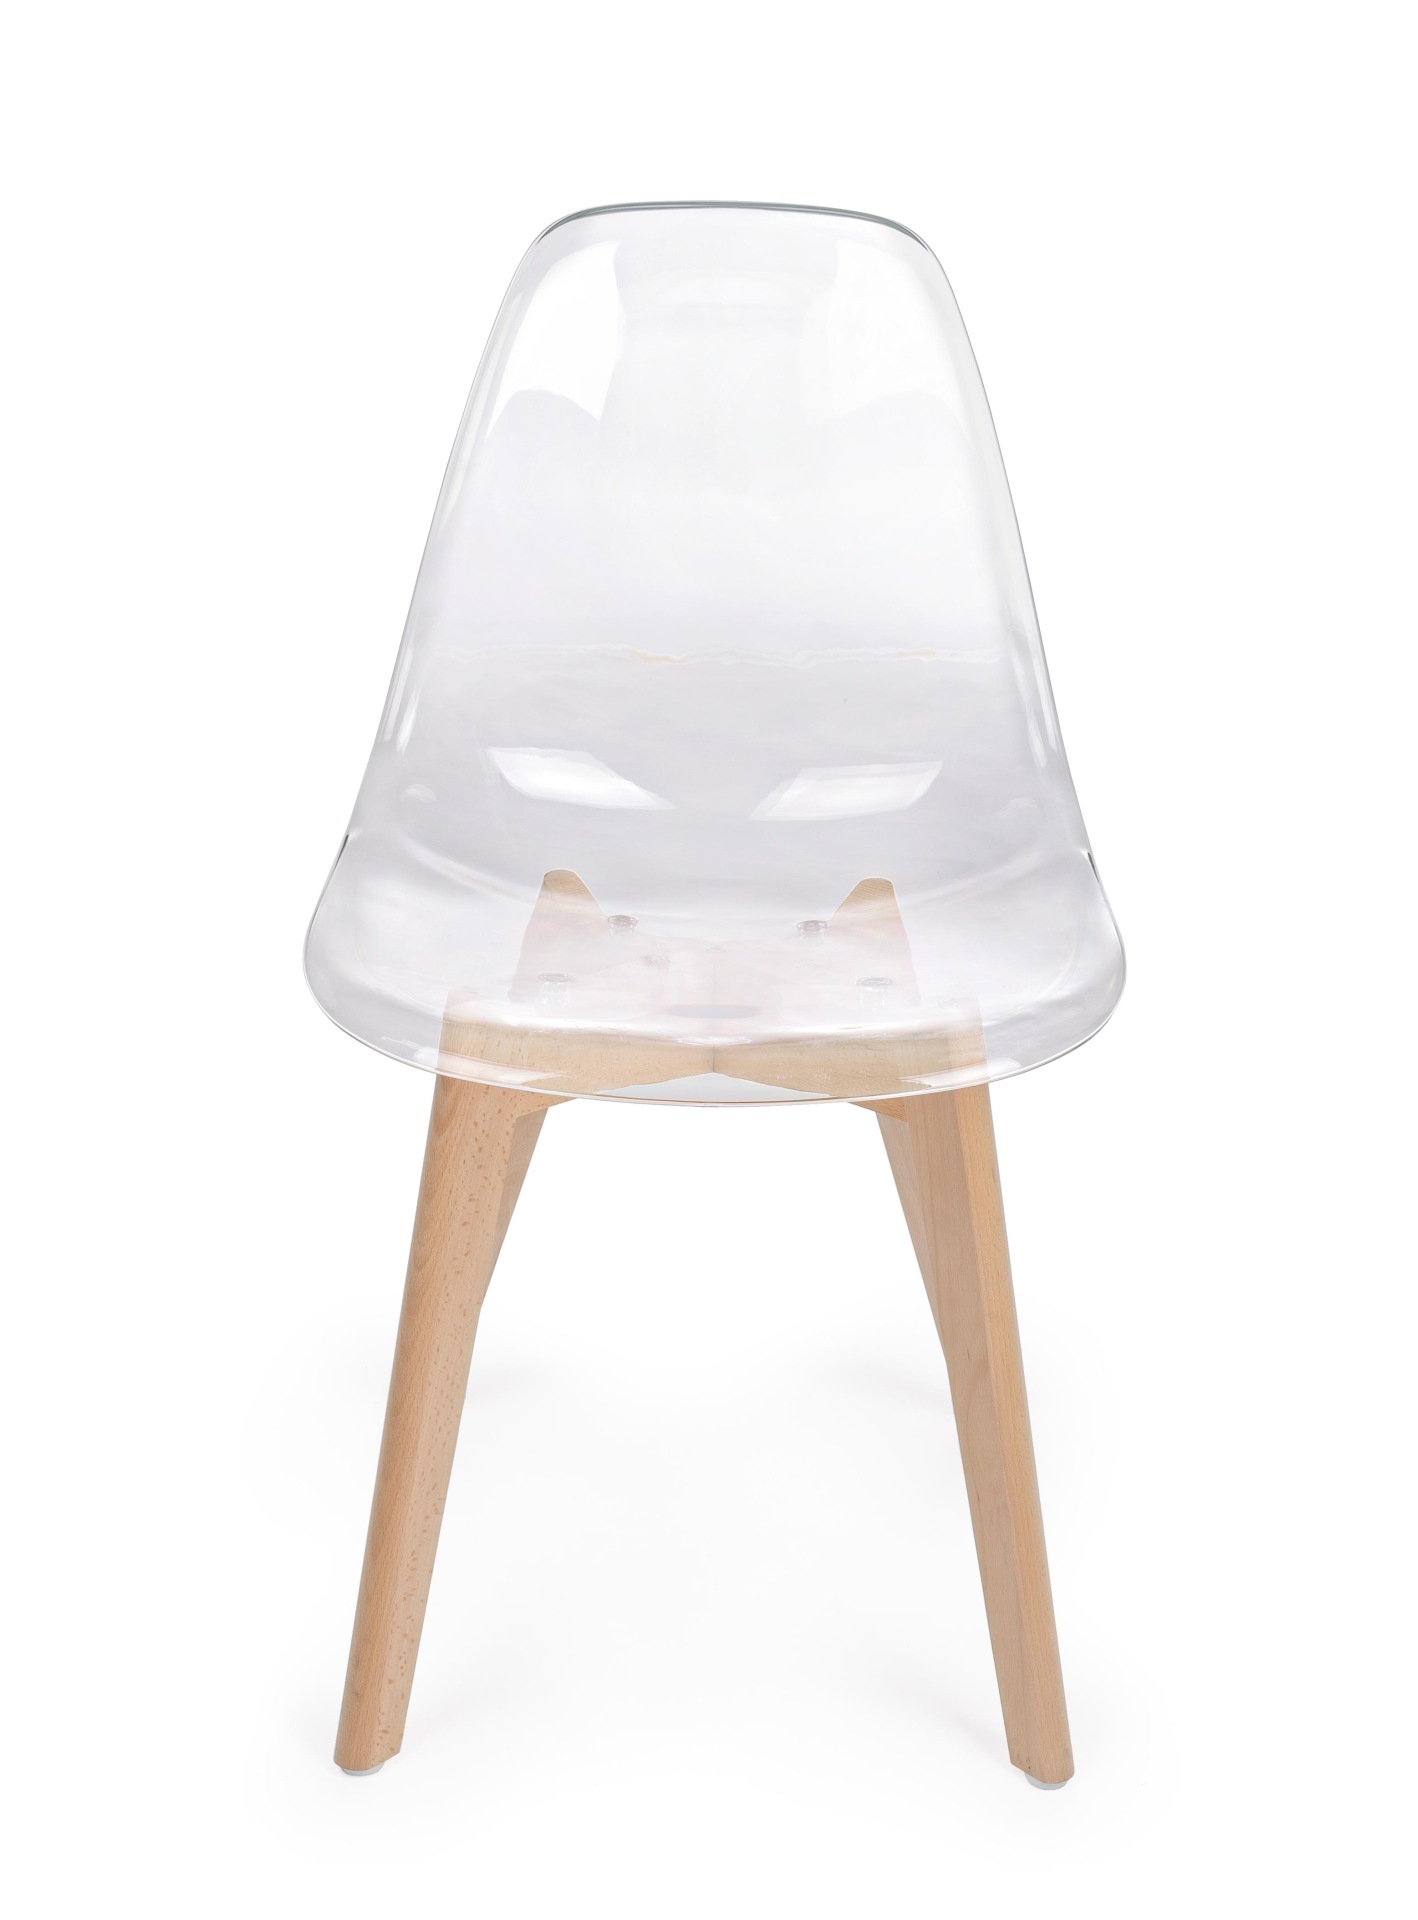 Der Stuhl Easy überzeugt mit seinem modernem aber auch besonderem Design. Gefertigt wurde die Sitzschale aus Kunststoff, welche Transparent ist. Das Gestell ist aus Buchenholz und hat einen natürlichen Farbton. Die Sitzhöhe beträgt 44 cm.